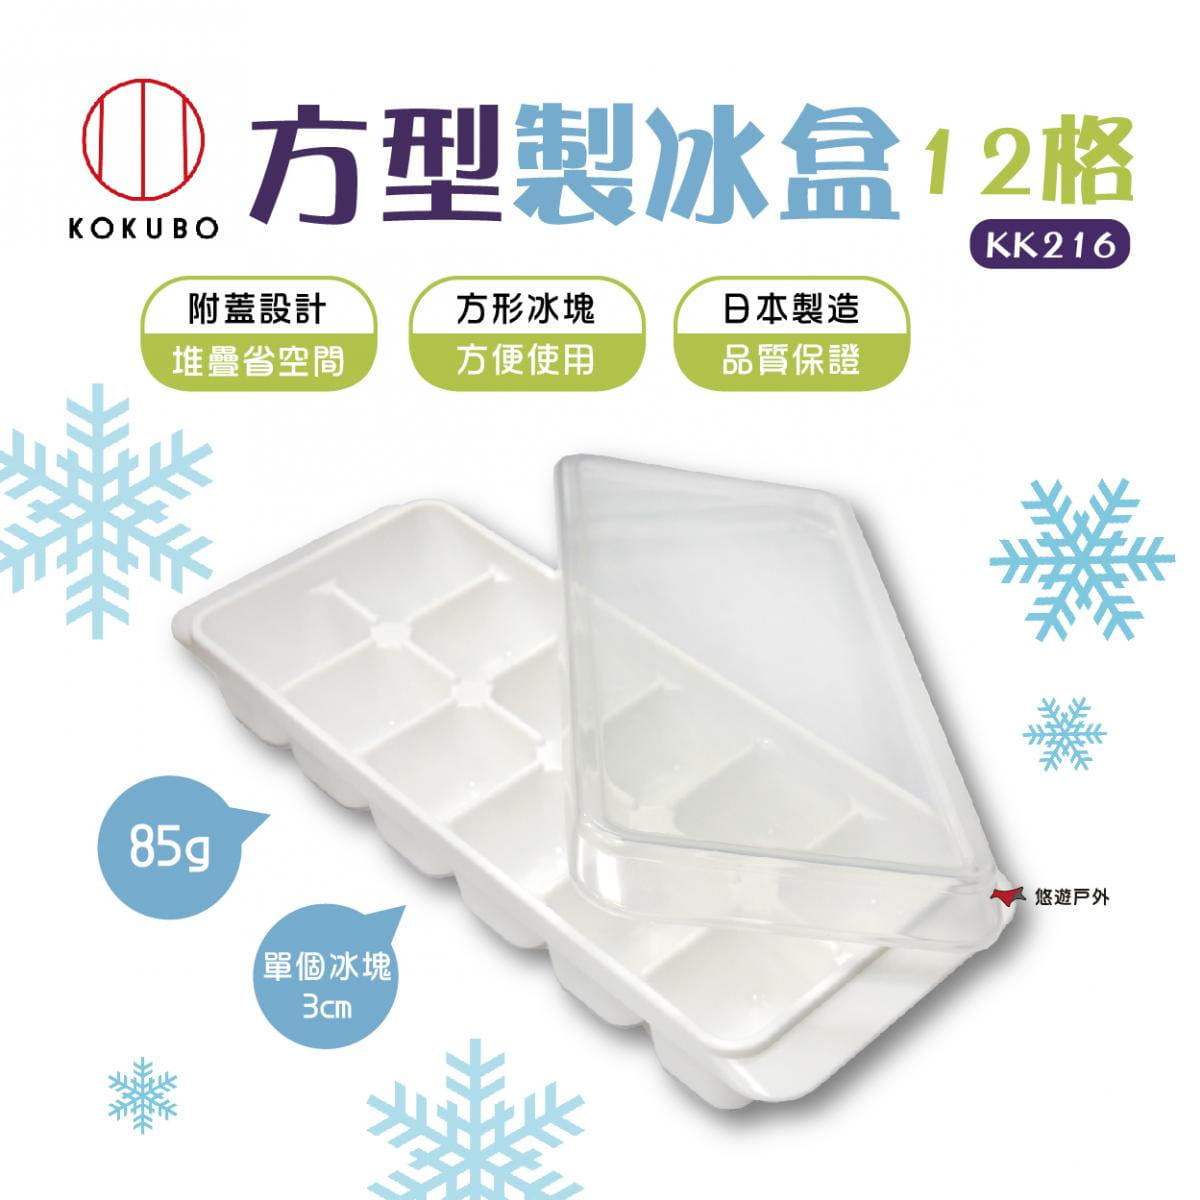 【KOKUBO】小久保方型製冰盒12格 KK216 悠遊戶外 0